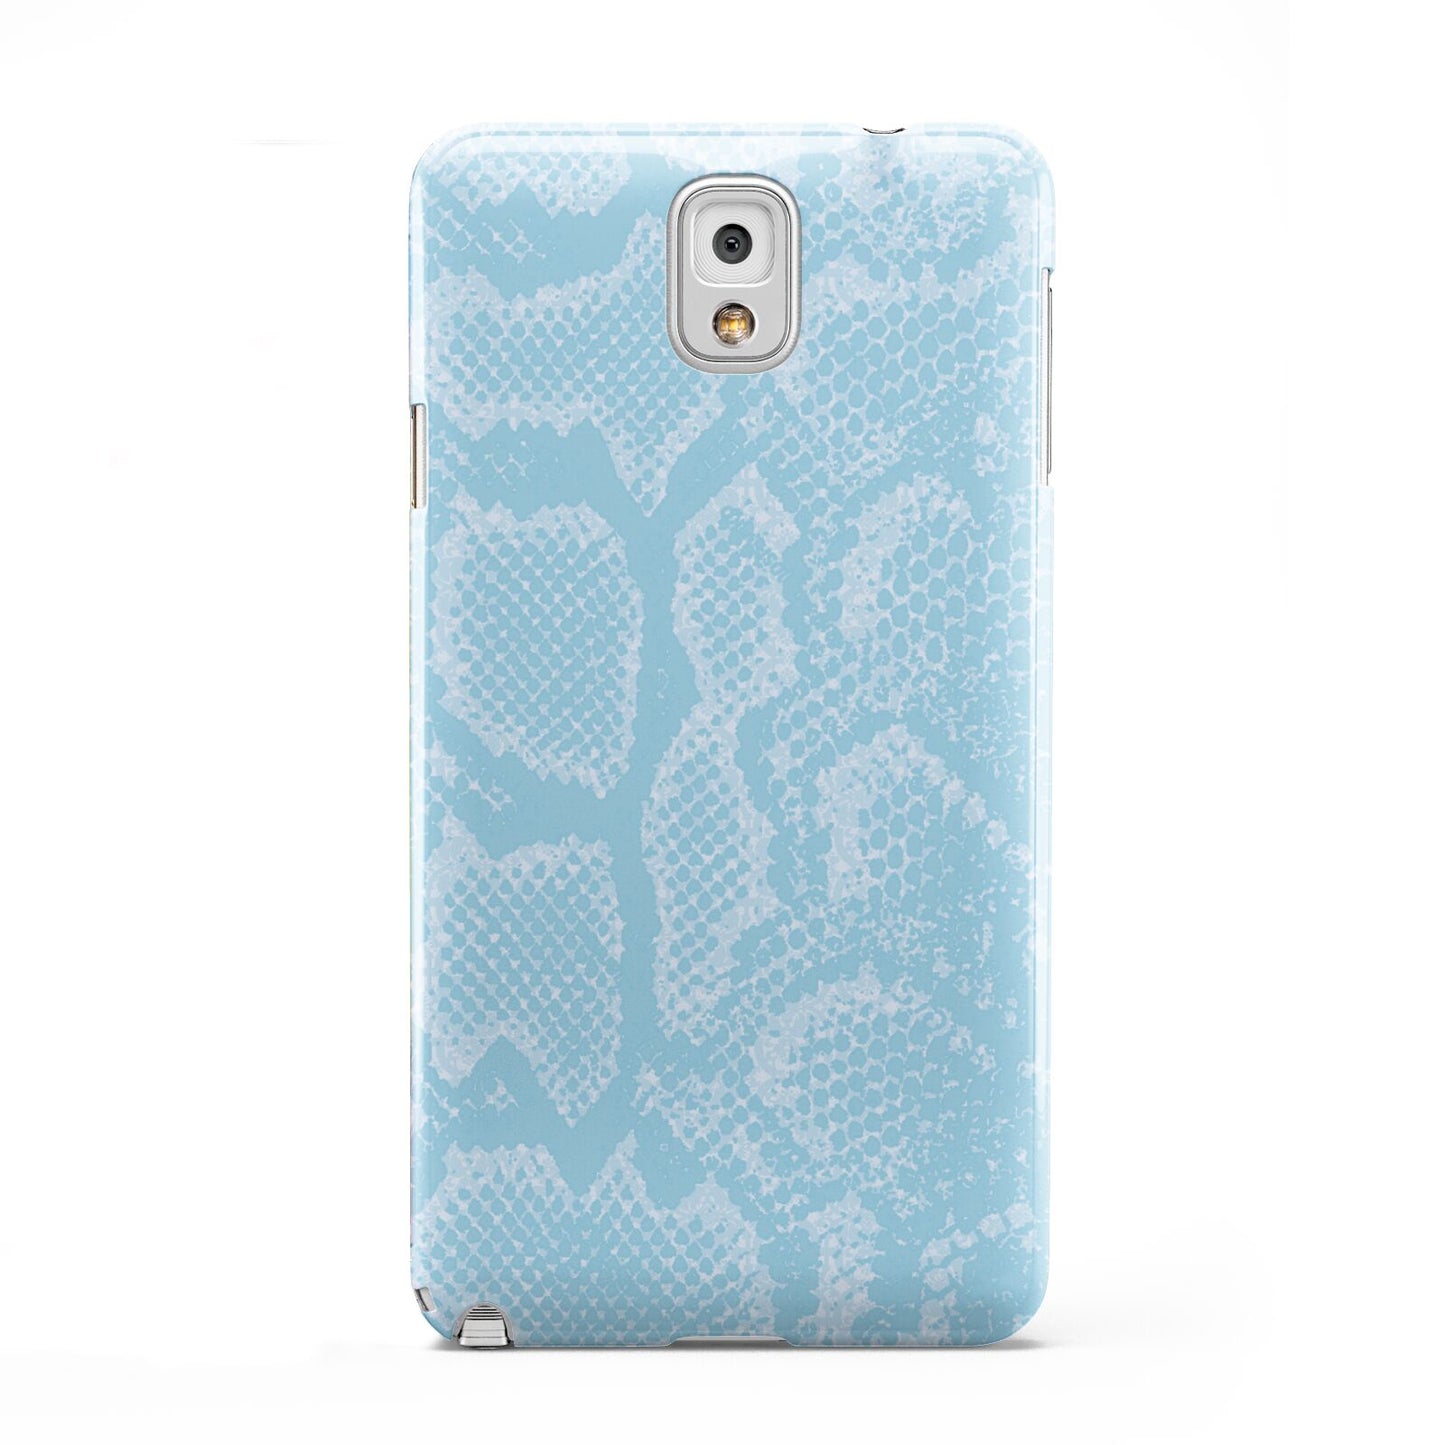 Blue Snakeskin Samsung Galaxy Note 3 Case